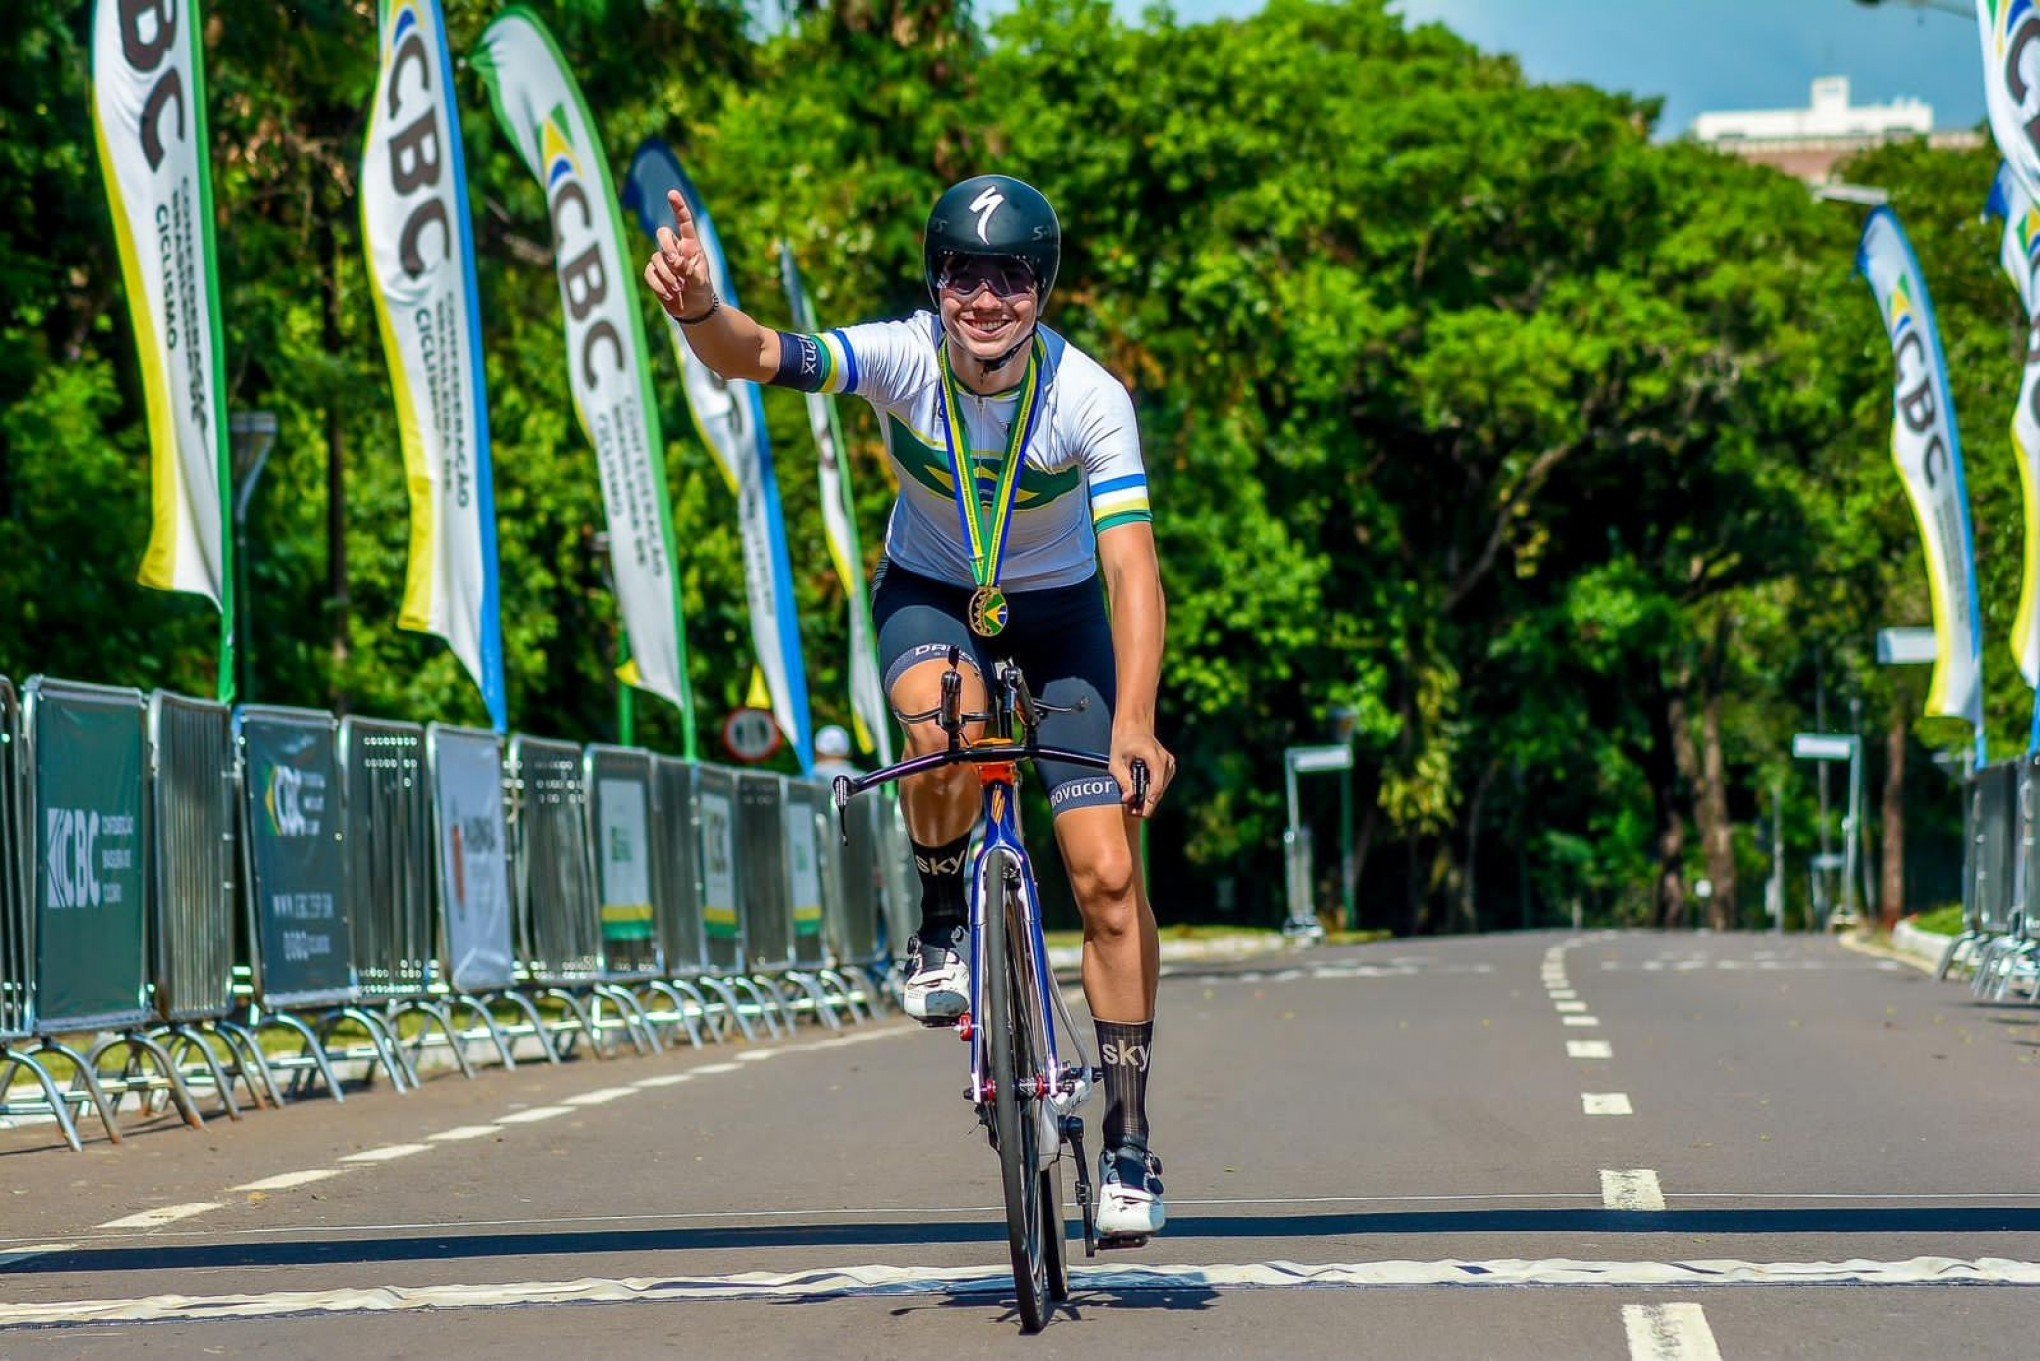 Ciclista de Novo Hamburgo pede ajuda para competir em Portugal: "Vai ser um sonho"